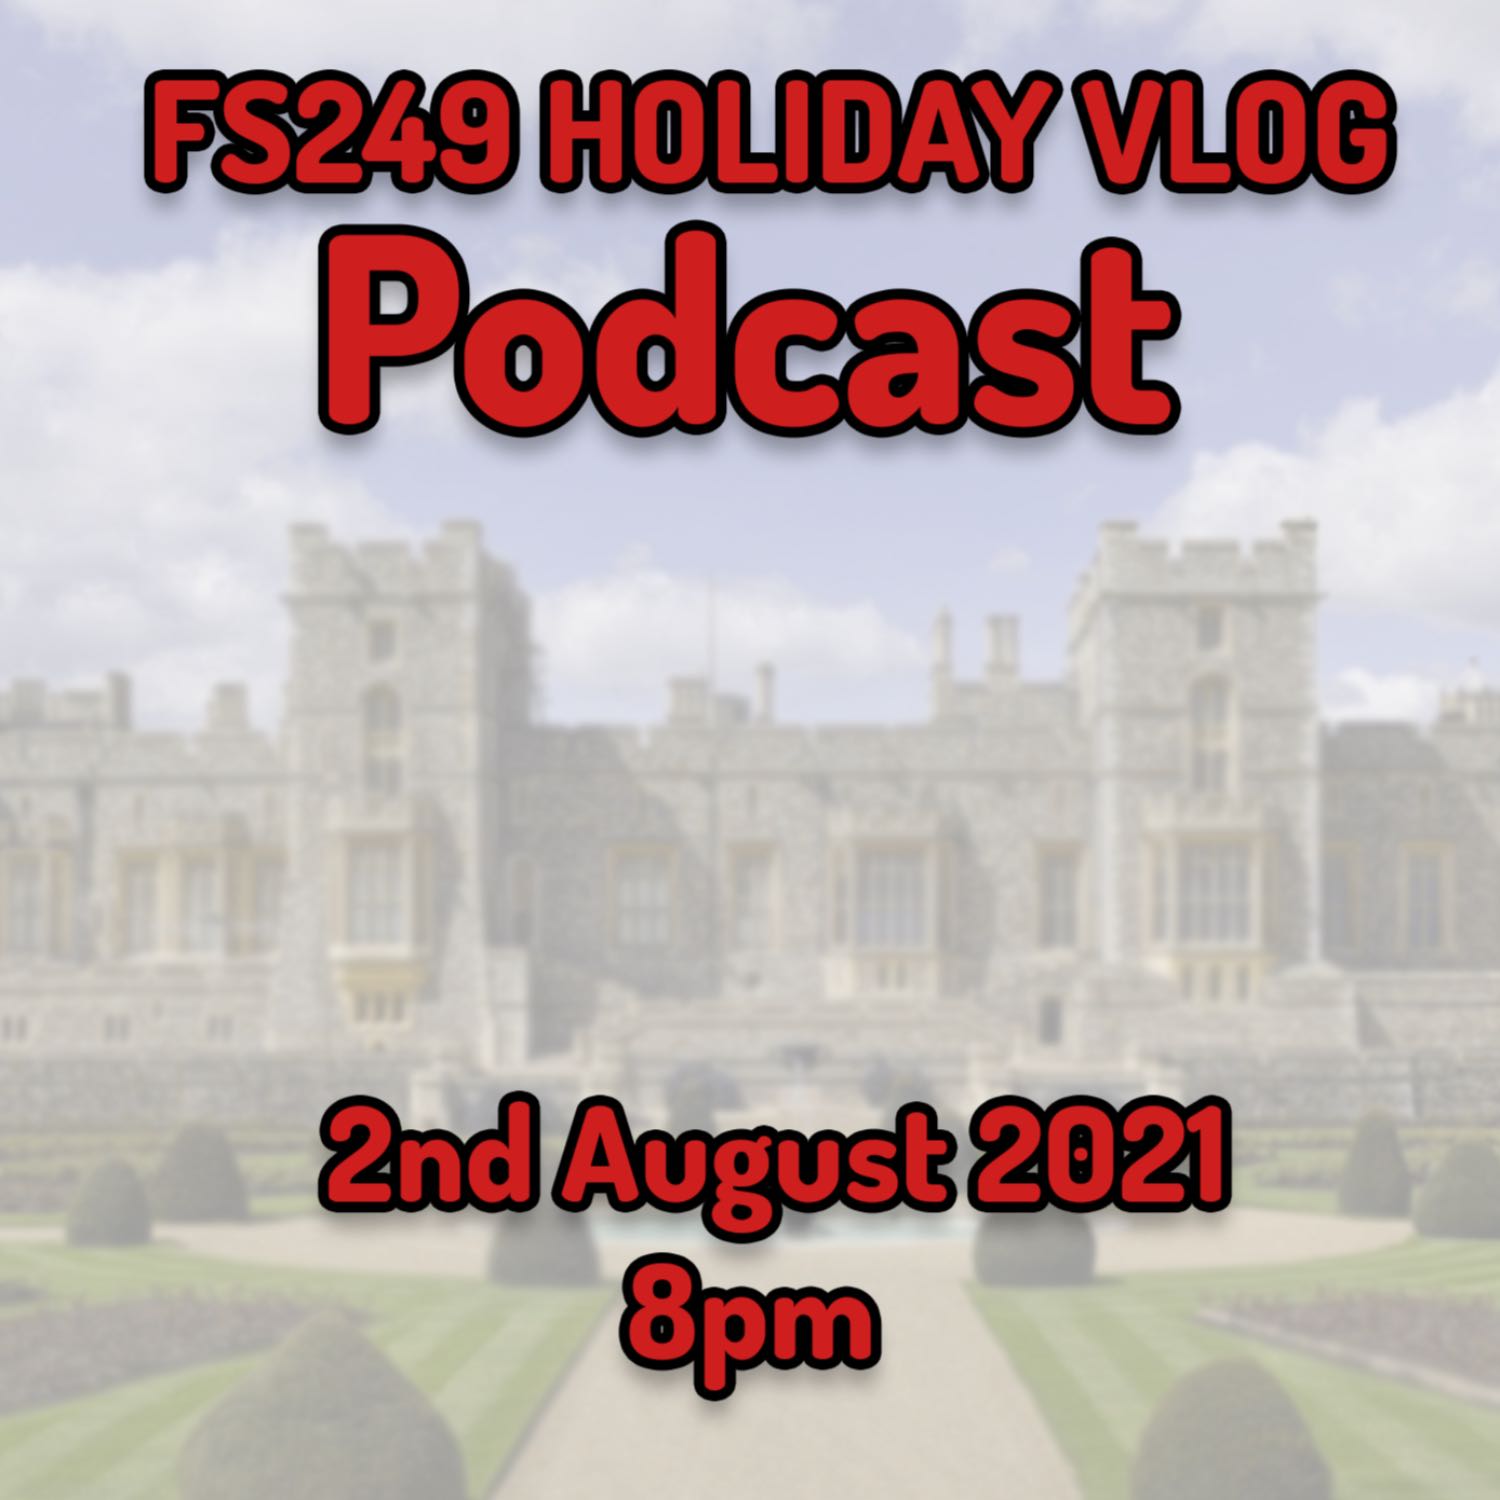 FS249 - Holiday Vlog Podcast